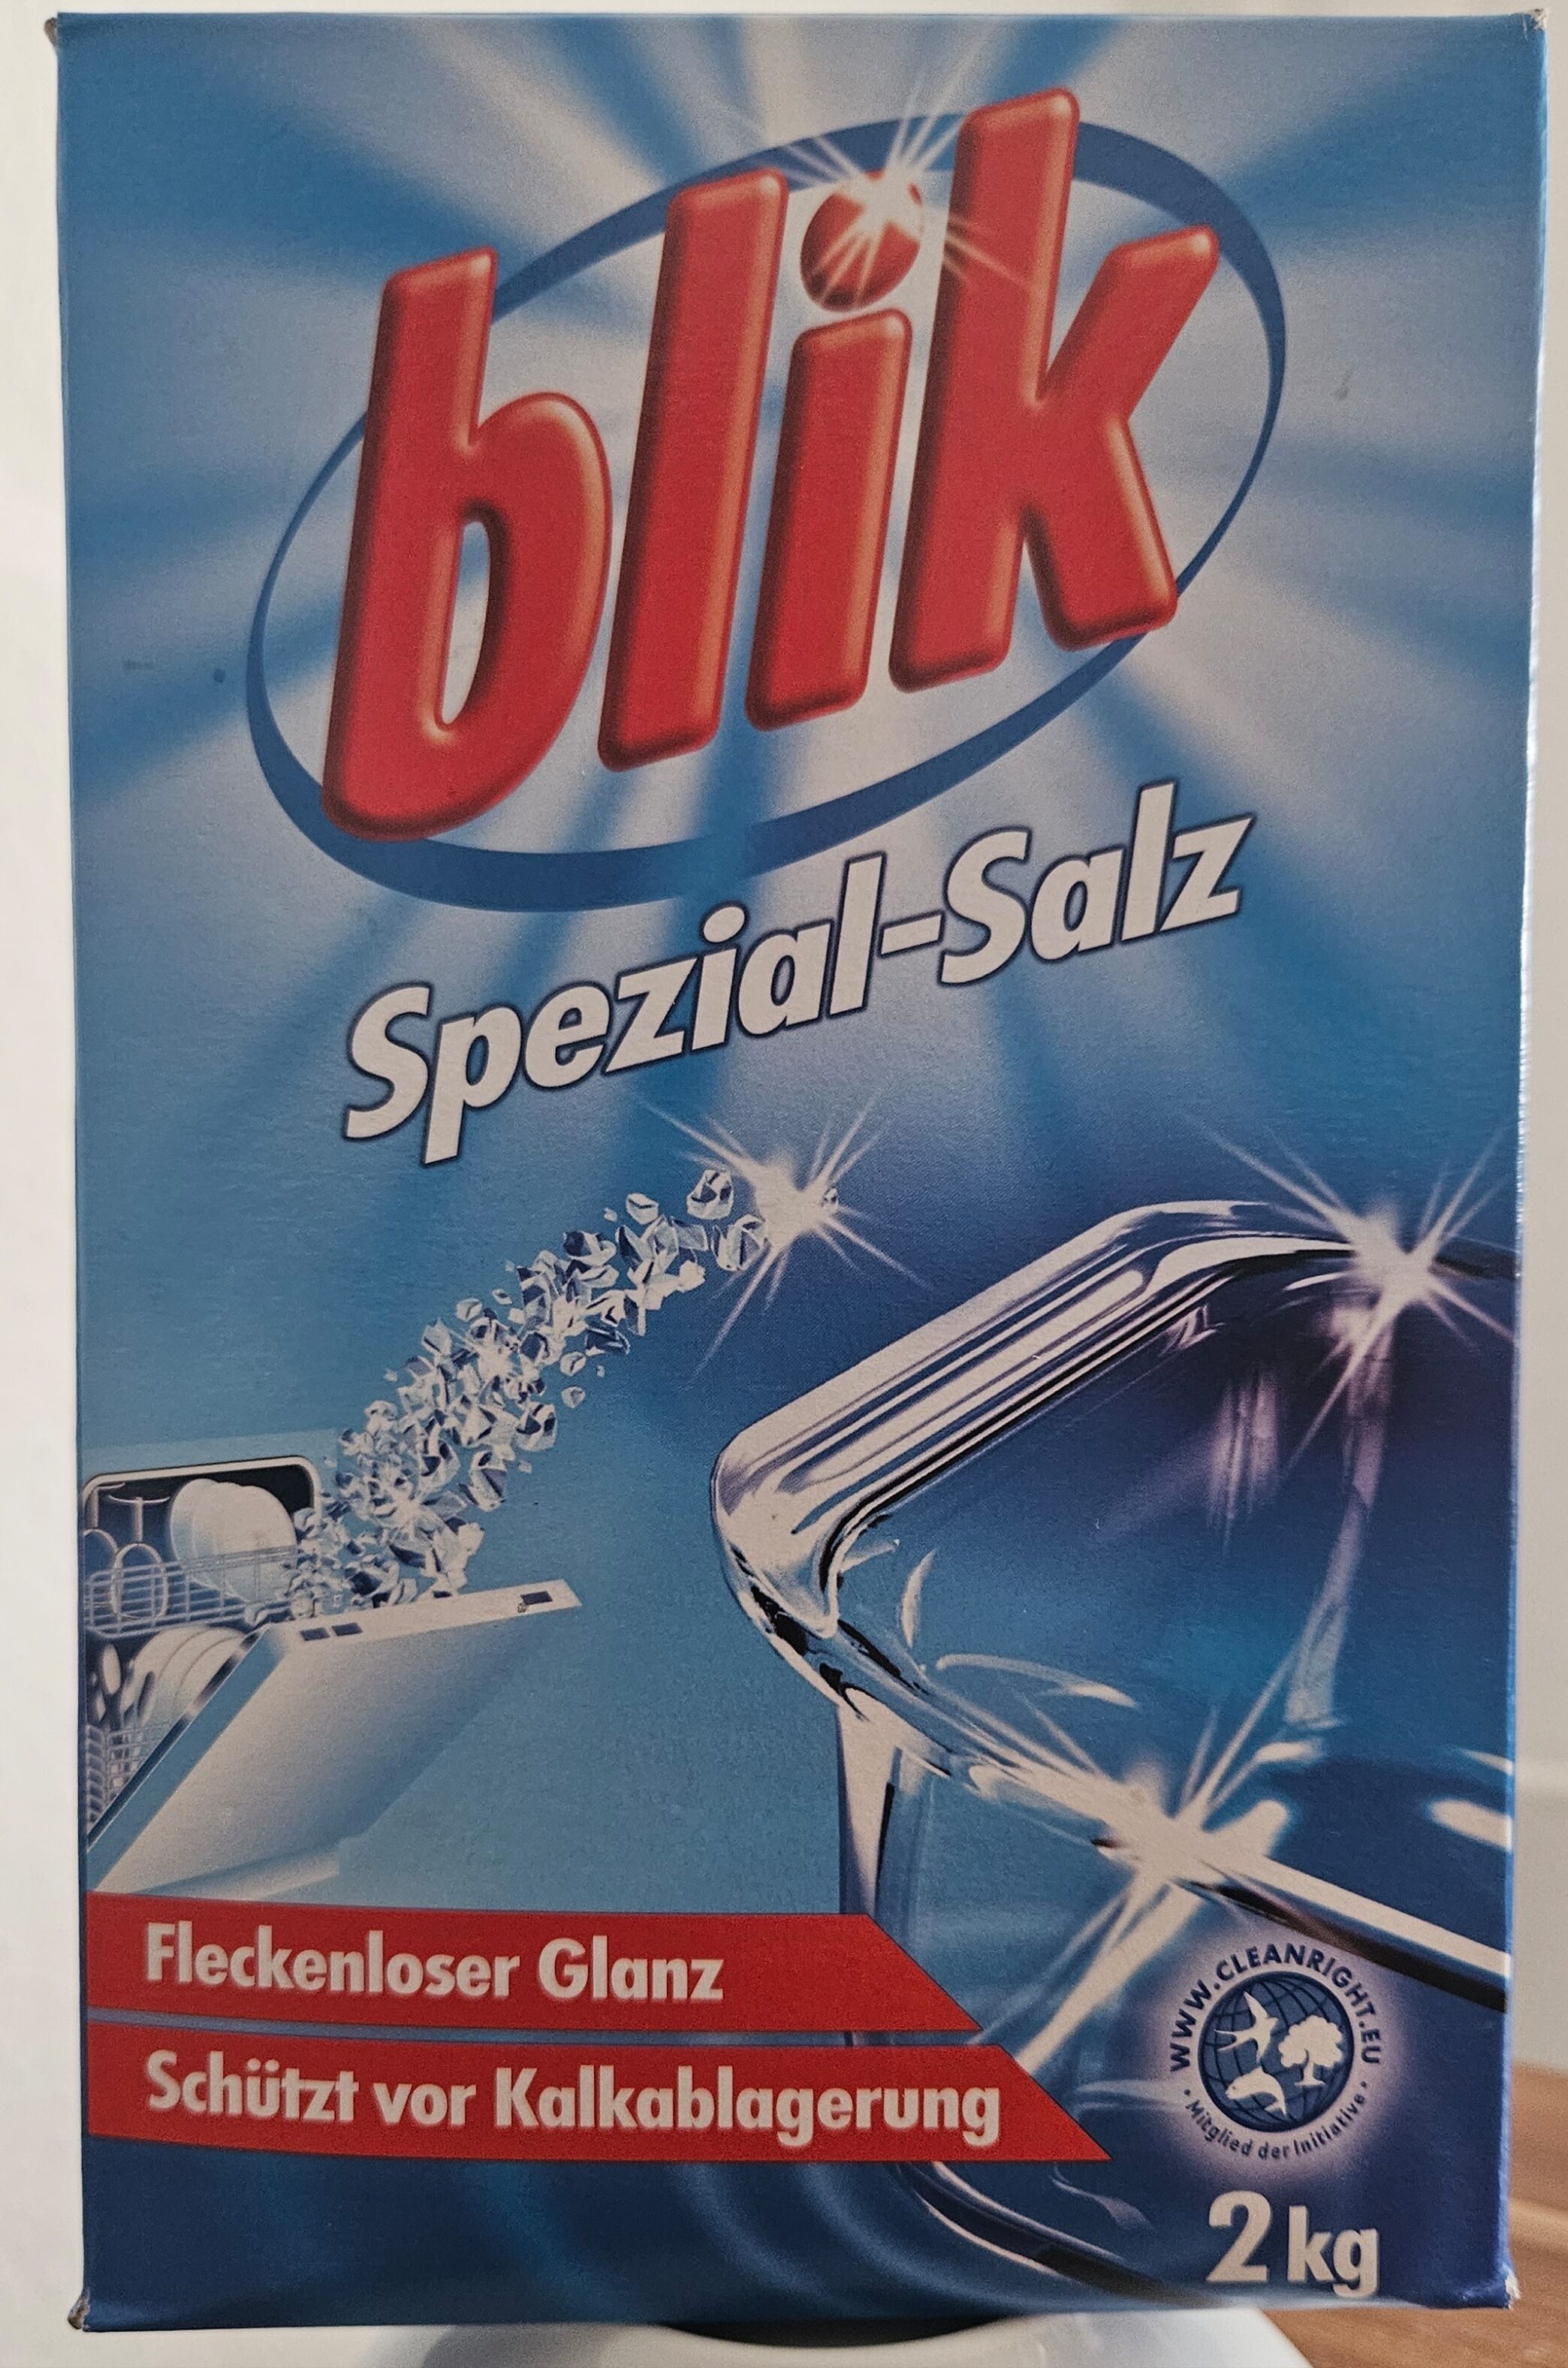 blik Spezial-Salz - Produit - de